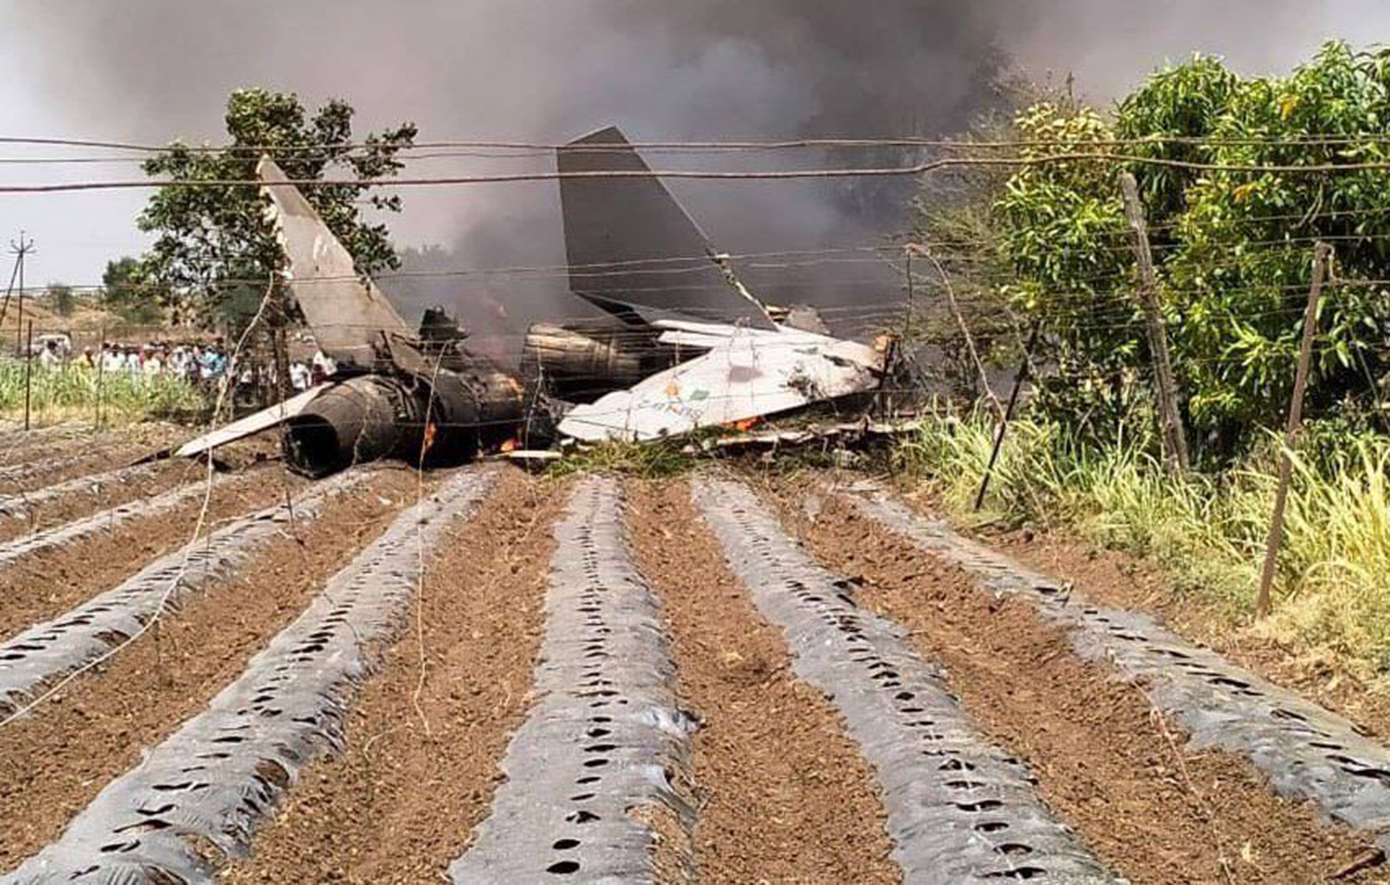 Συνετρίβη μαχητικό αεροσκάφος στην Ινδία – Σώθηκαν οι πιλότοι